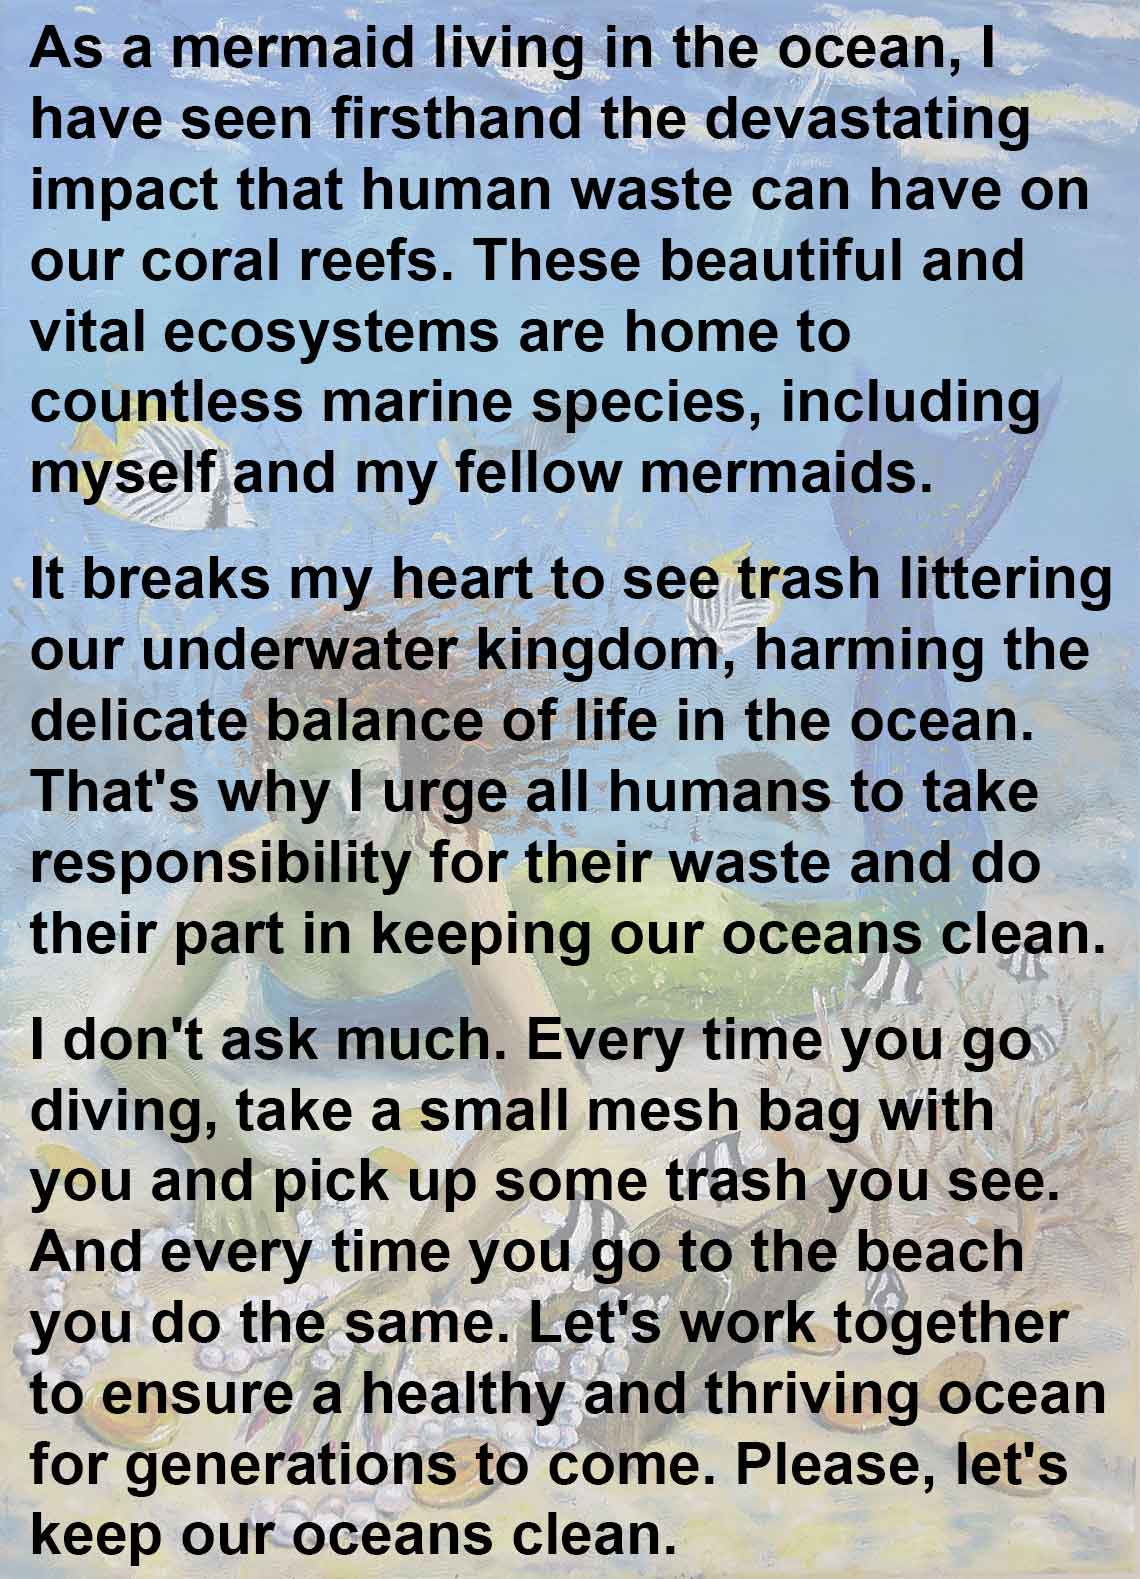 olga belka mermaid trash hero reef cleanup beach cleanup eco activist